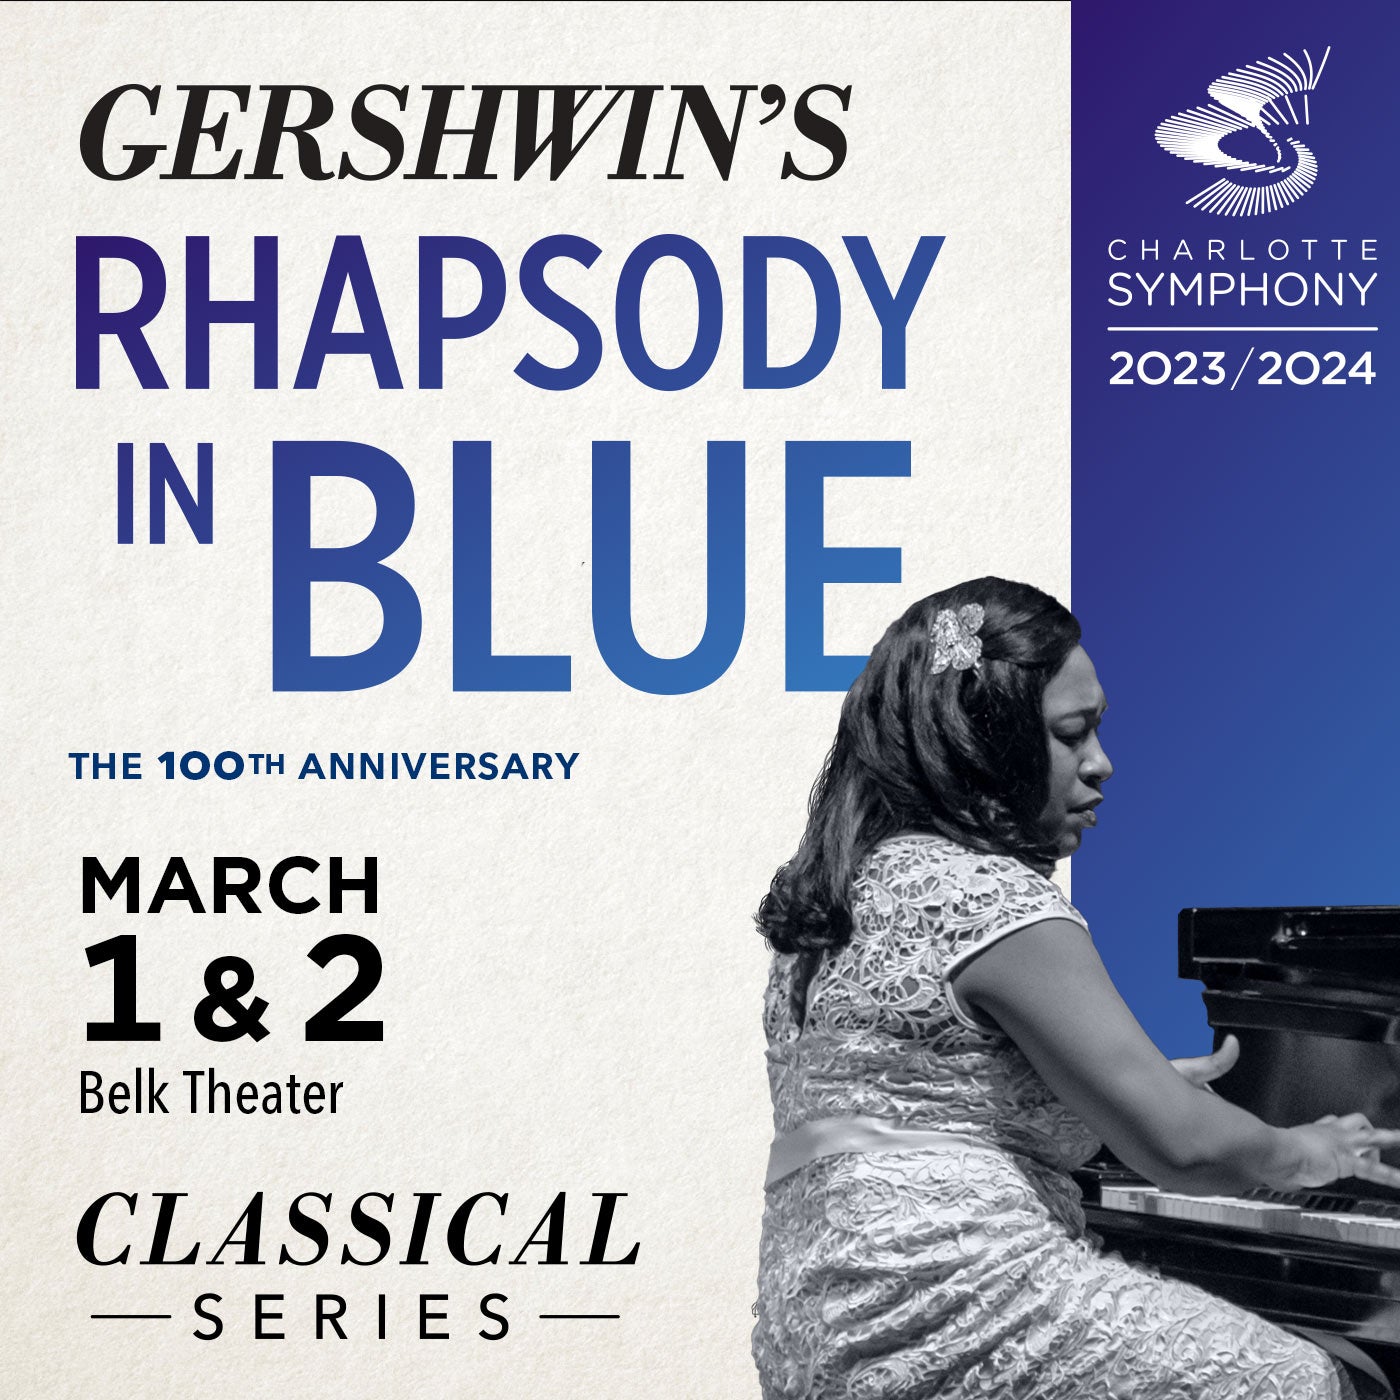 Charlotte Symphony: Gershwin's Rhapsody in Blue